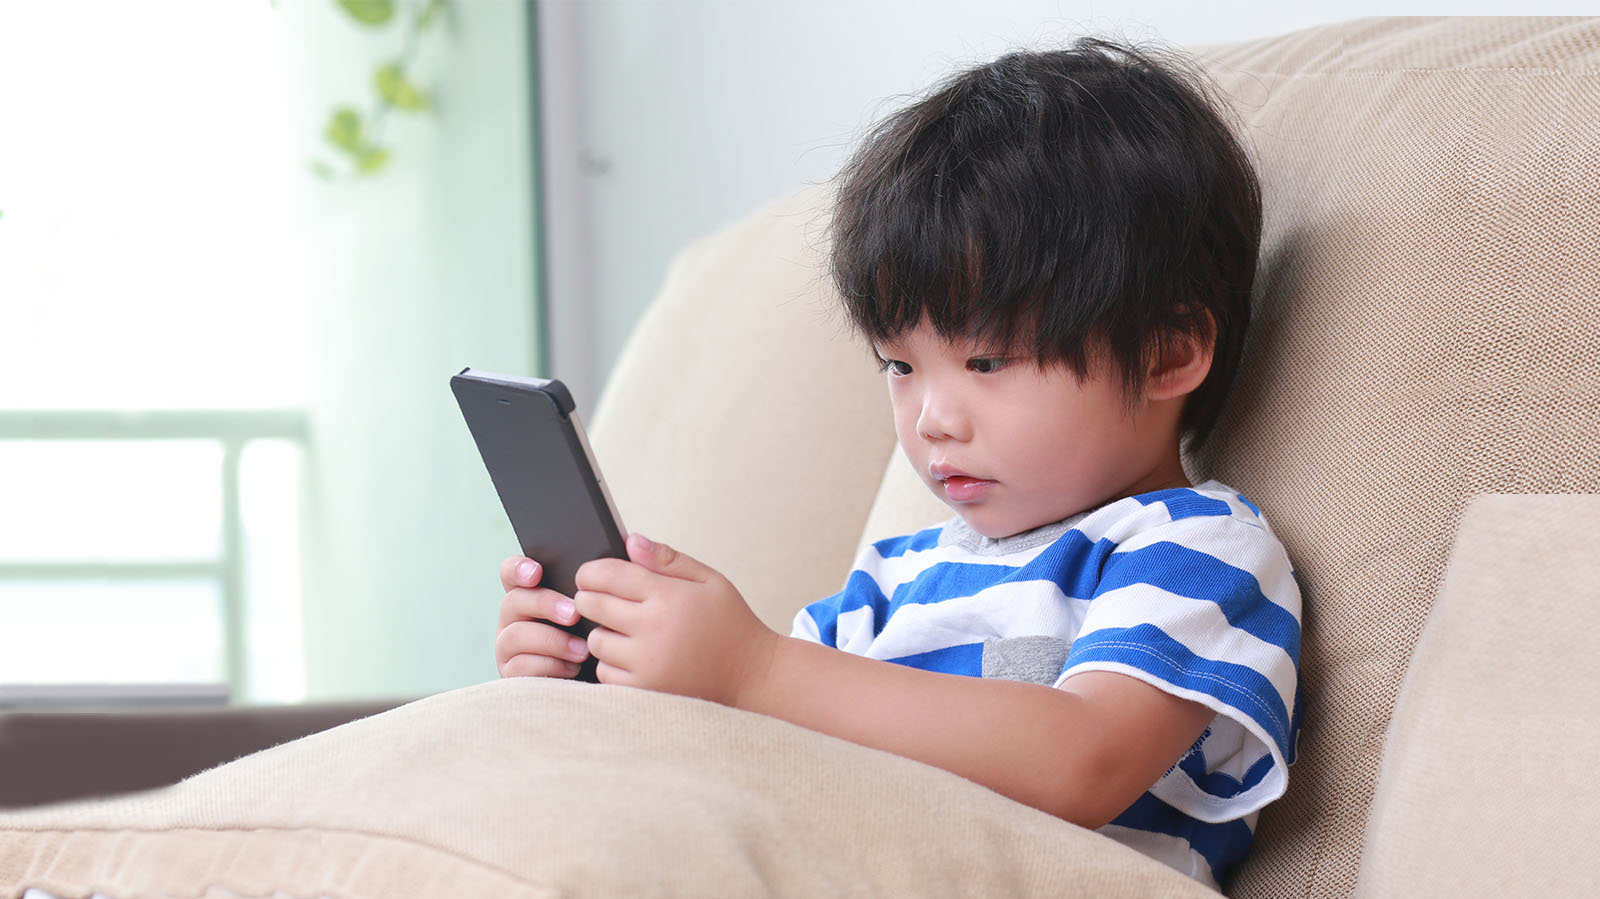 Should we let our kids have smartphones?